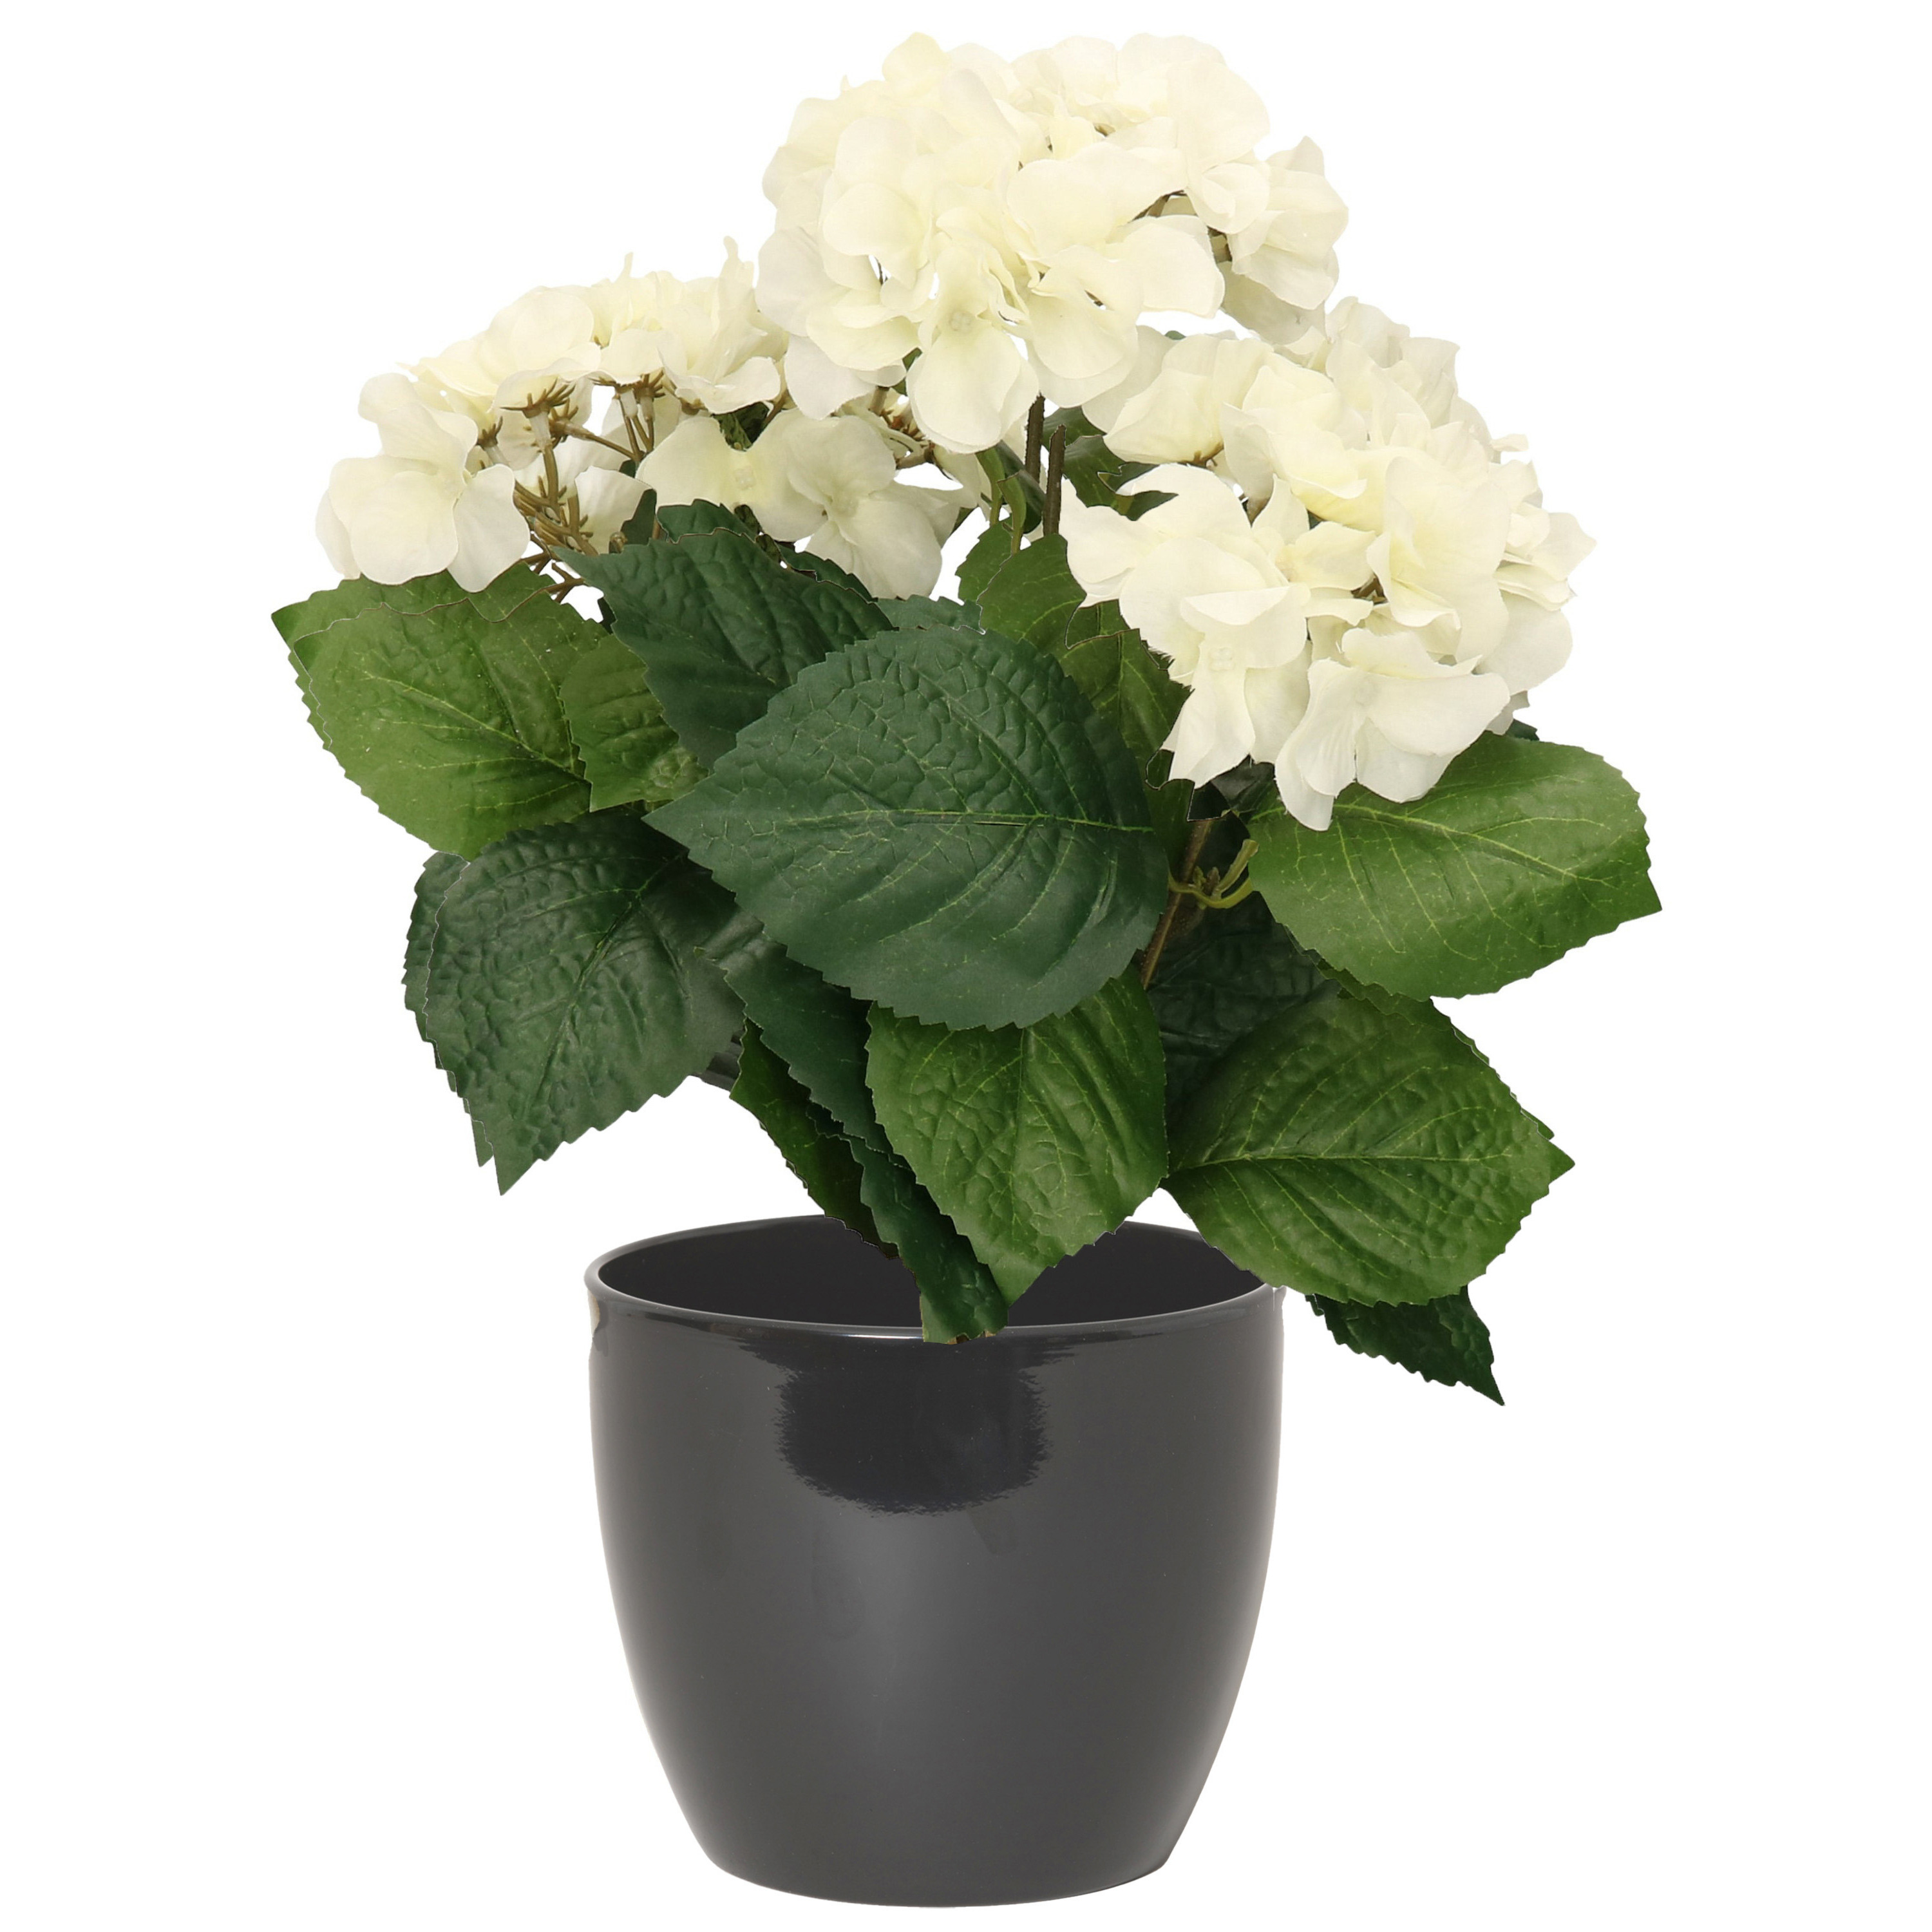 Hortensia kunstplant met bloemen wit in pot antraciet grijs 40 cm hoog